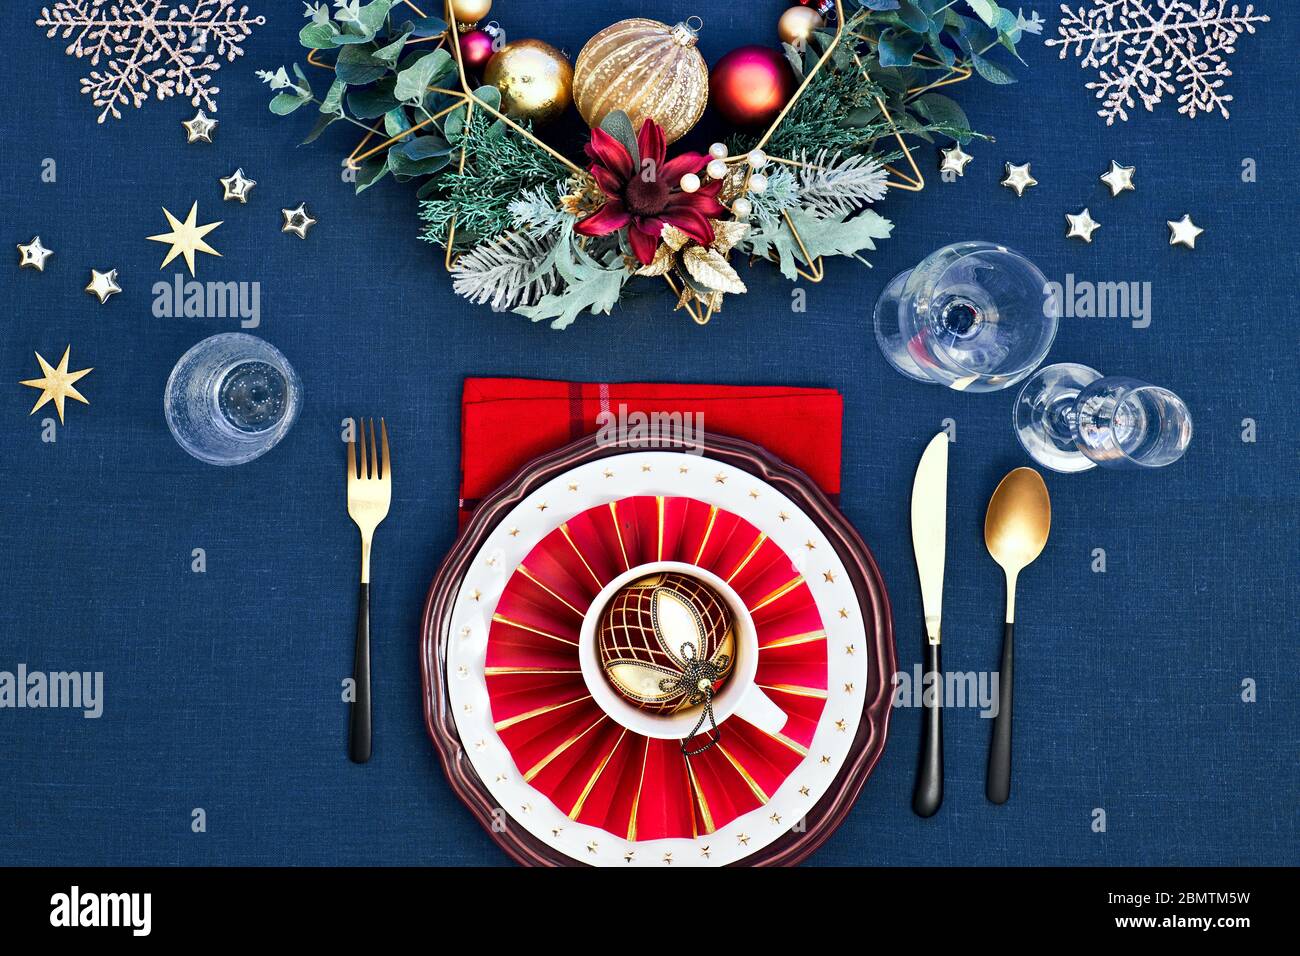 Tavola di Natale messa a punto con piatti rossi bianchi scuri, anello di carta rosso e poinsettia, utensili d'oro. Decorazioni dorate rosse, verdi e dorate. Disposizione piatta, Foto Stock